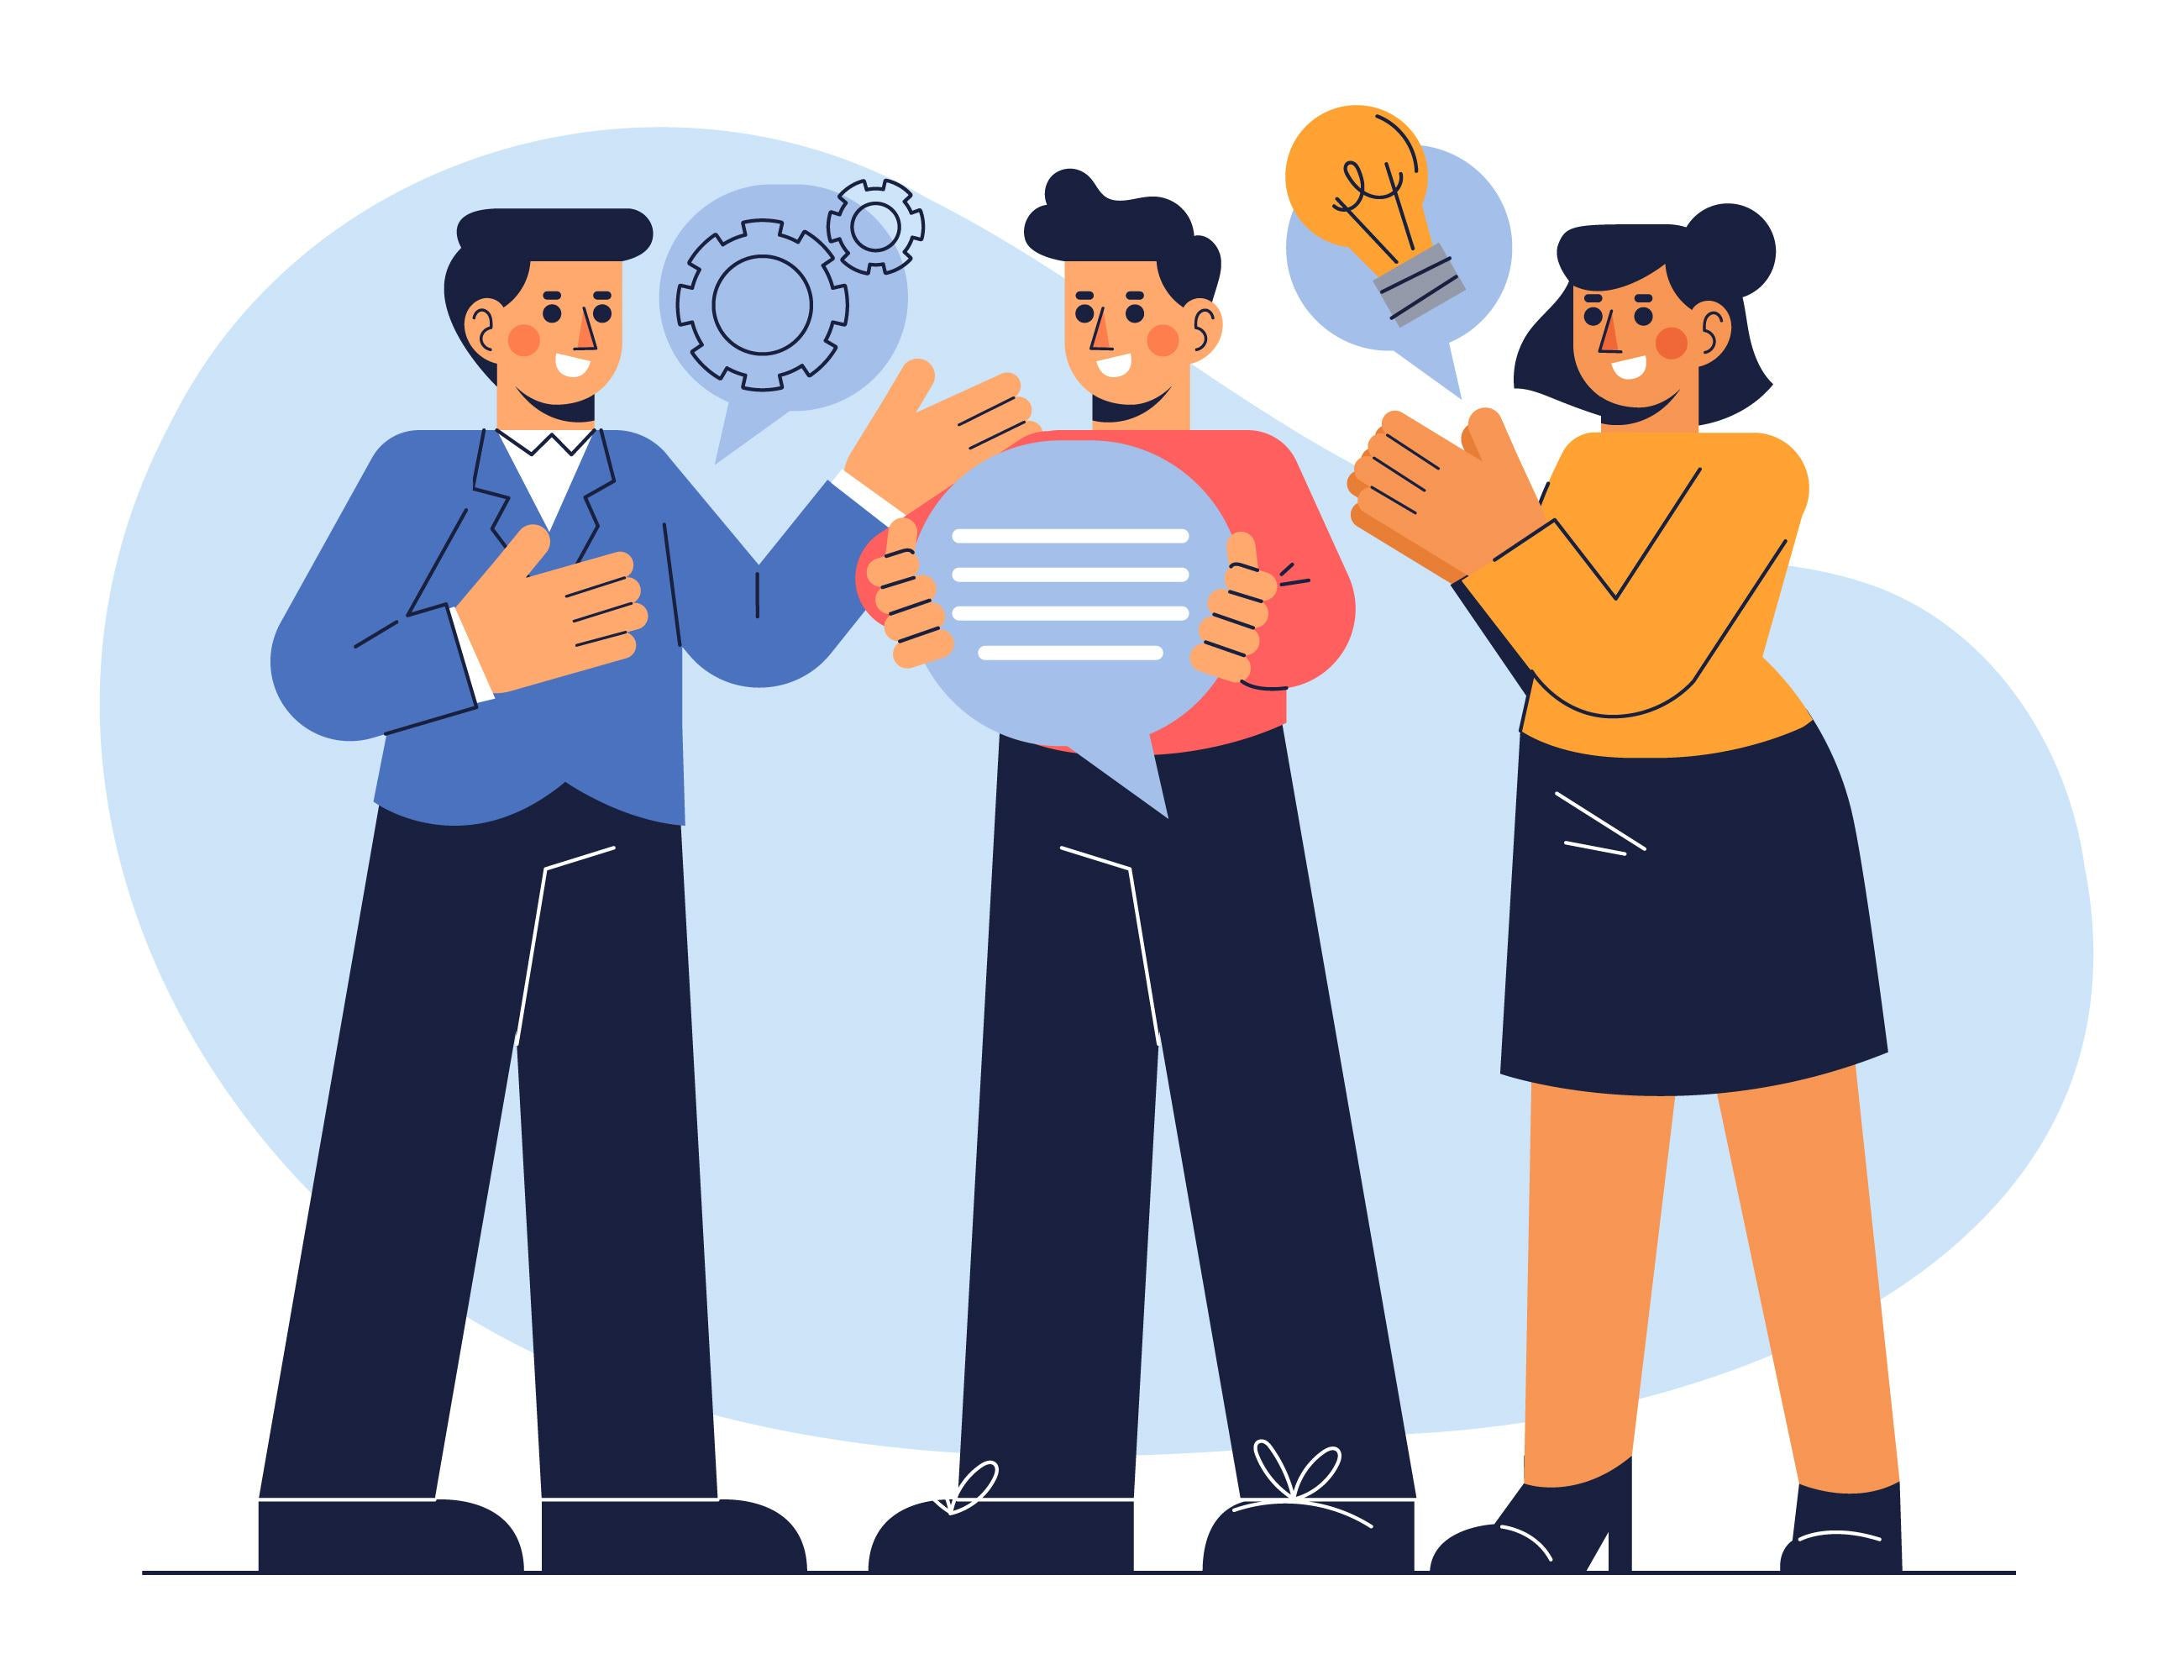 Ilustração negócios lucrativos. Um empreendedor vestindo azul conversa com um jovem em vermelho e uma jovem em amarelo